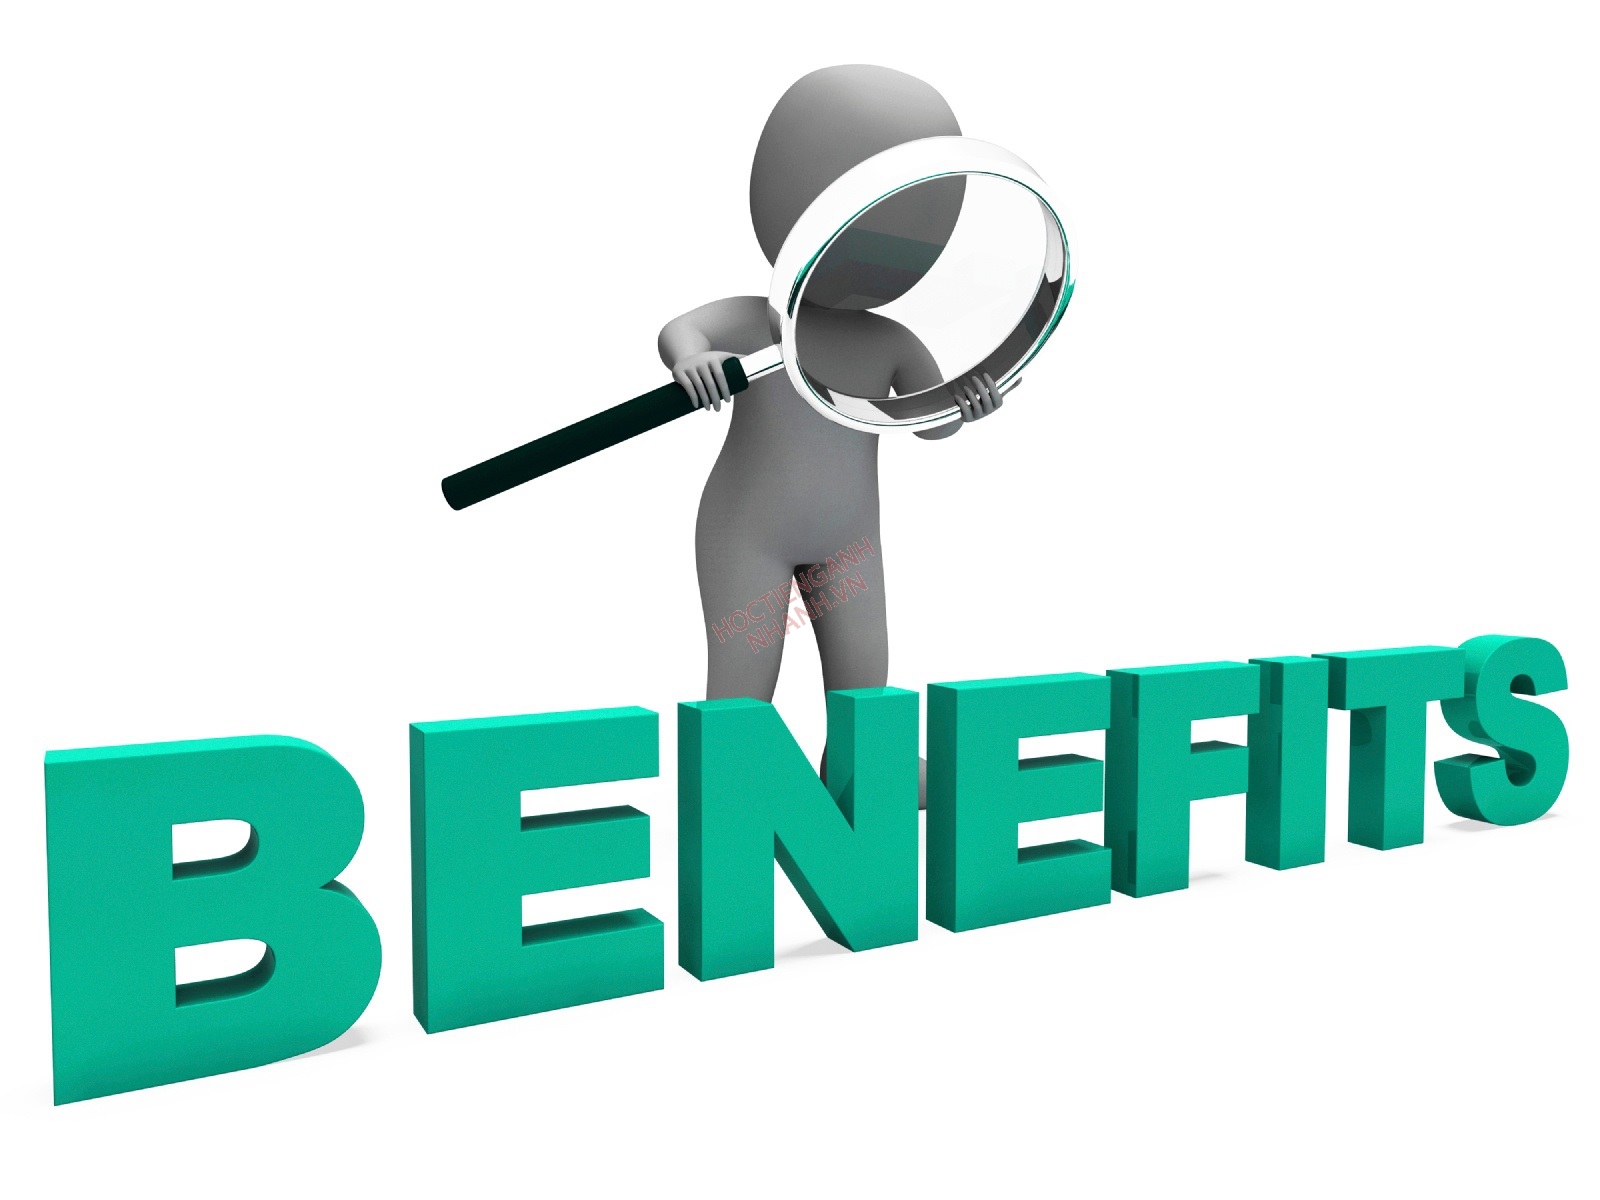 Cấu trúc benefit, các từ đồng nghĩa với benefit trong tiếng Anh